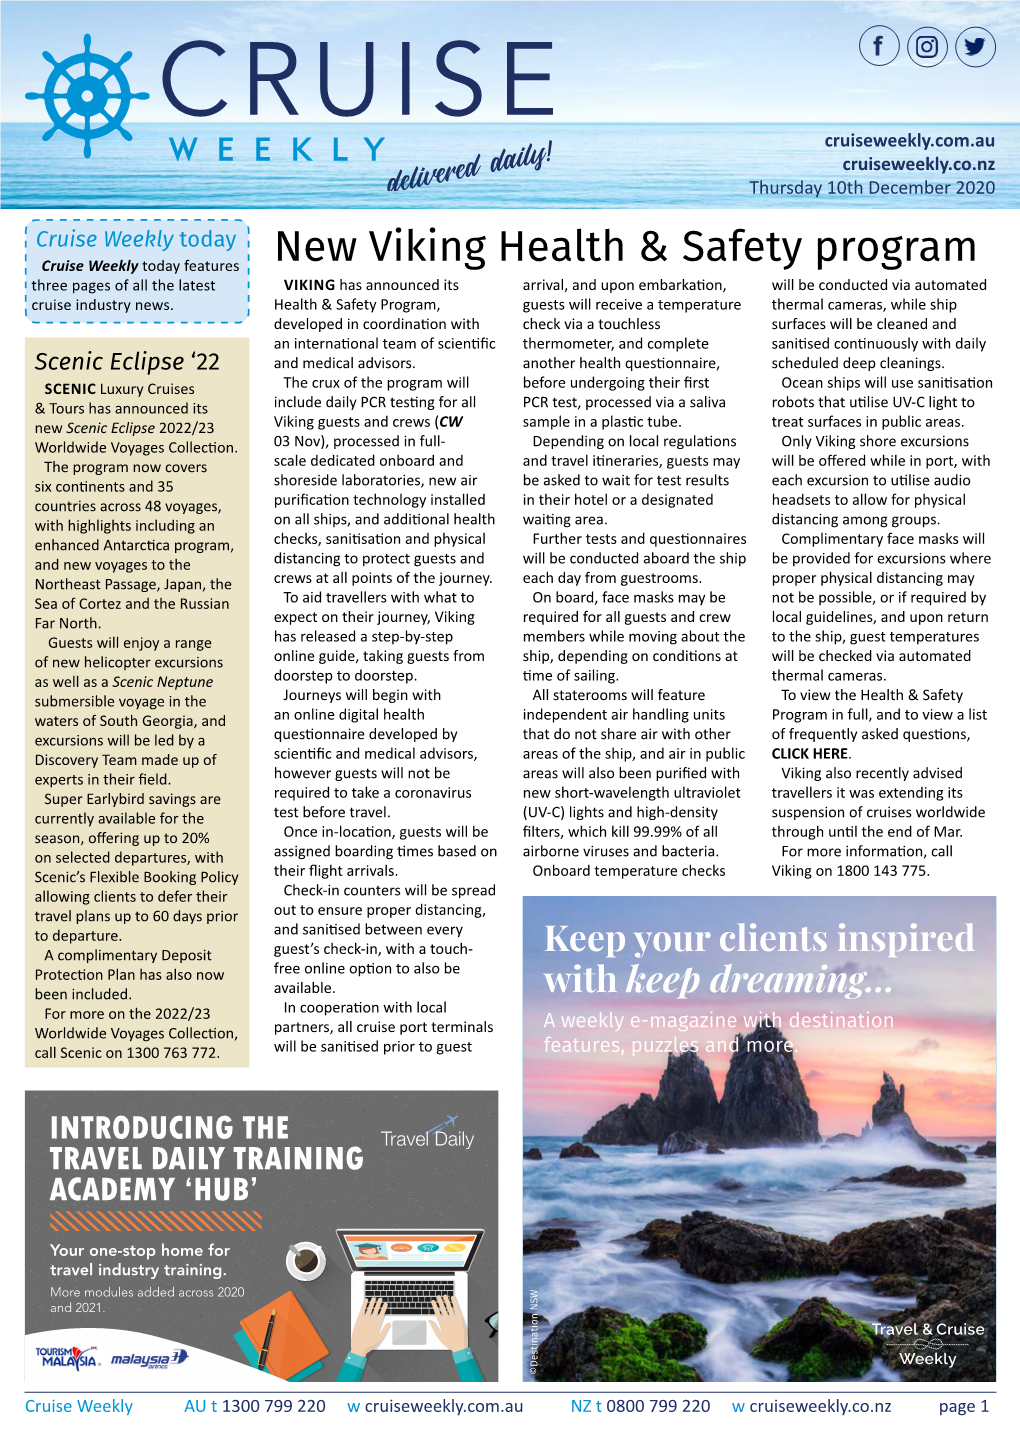 New Viking Health & Safety Program